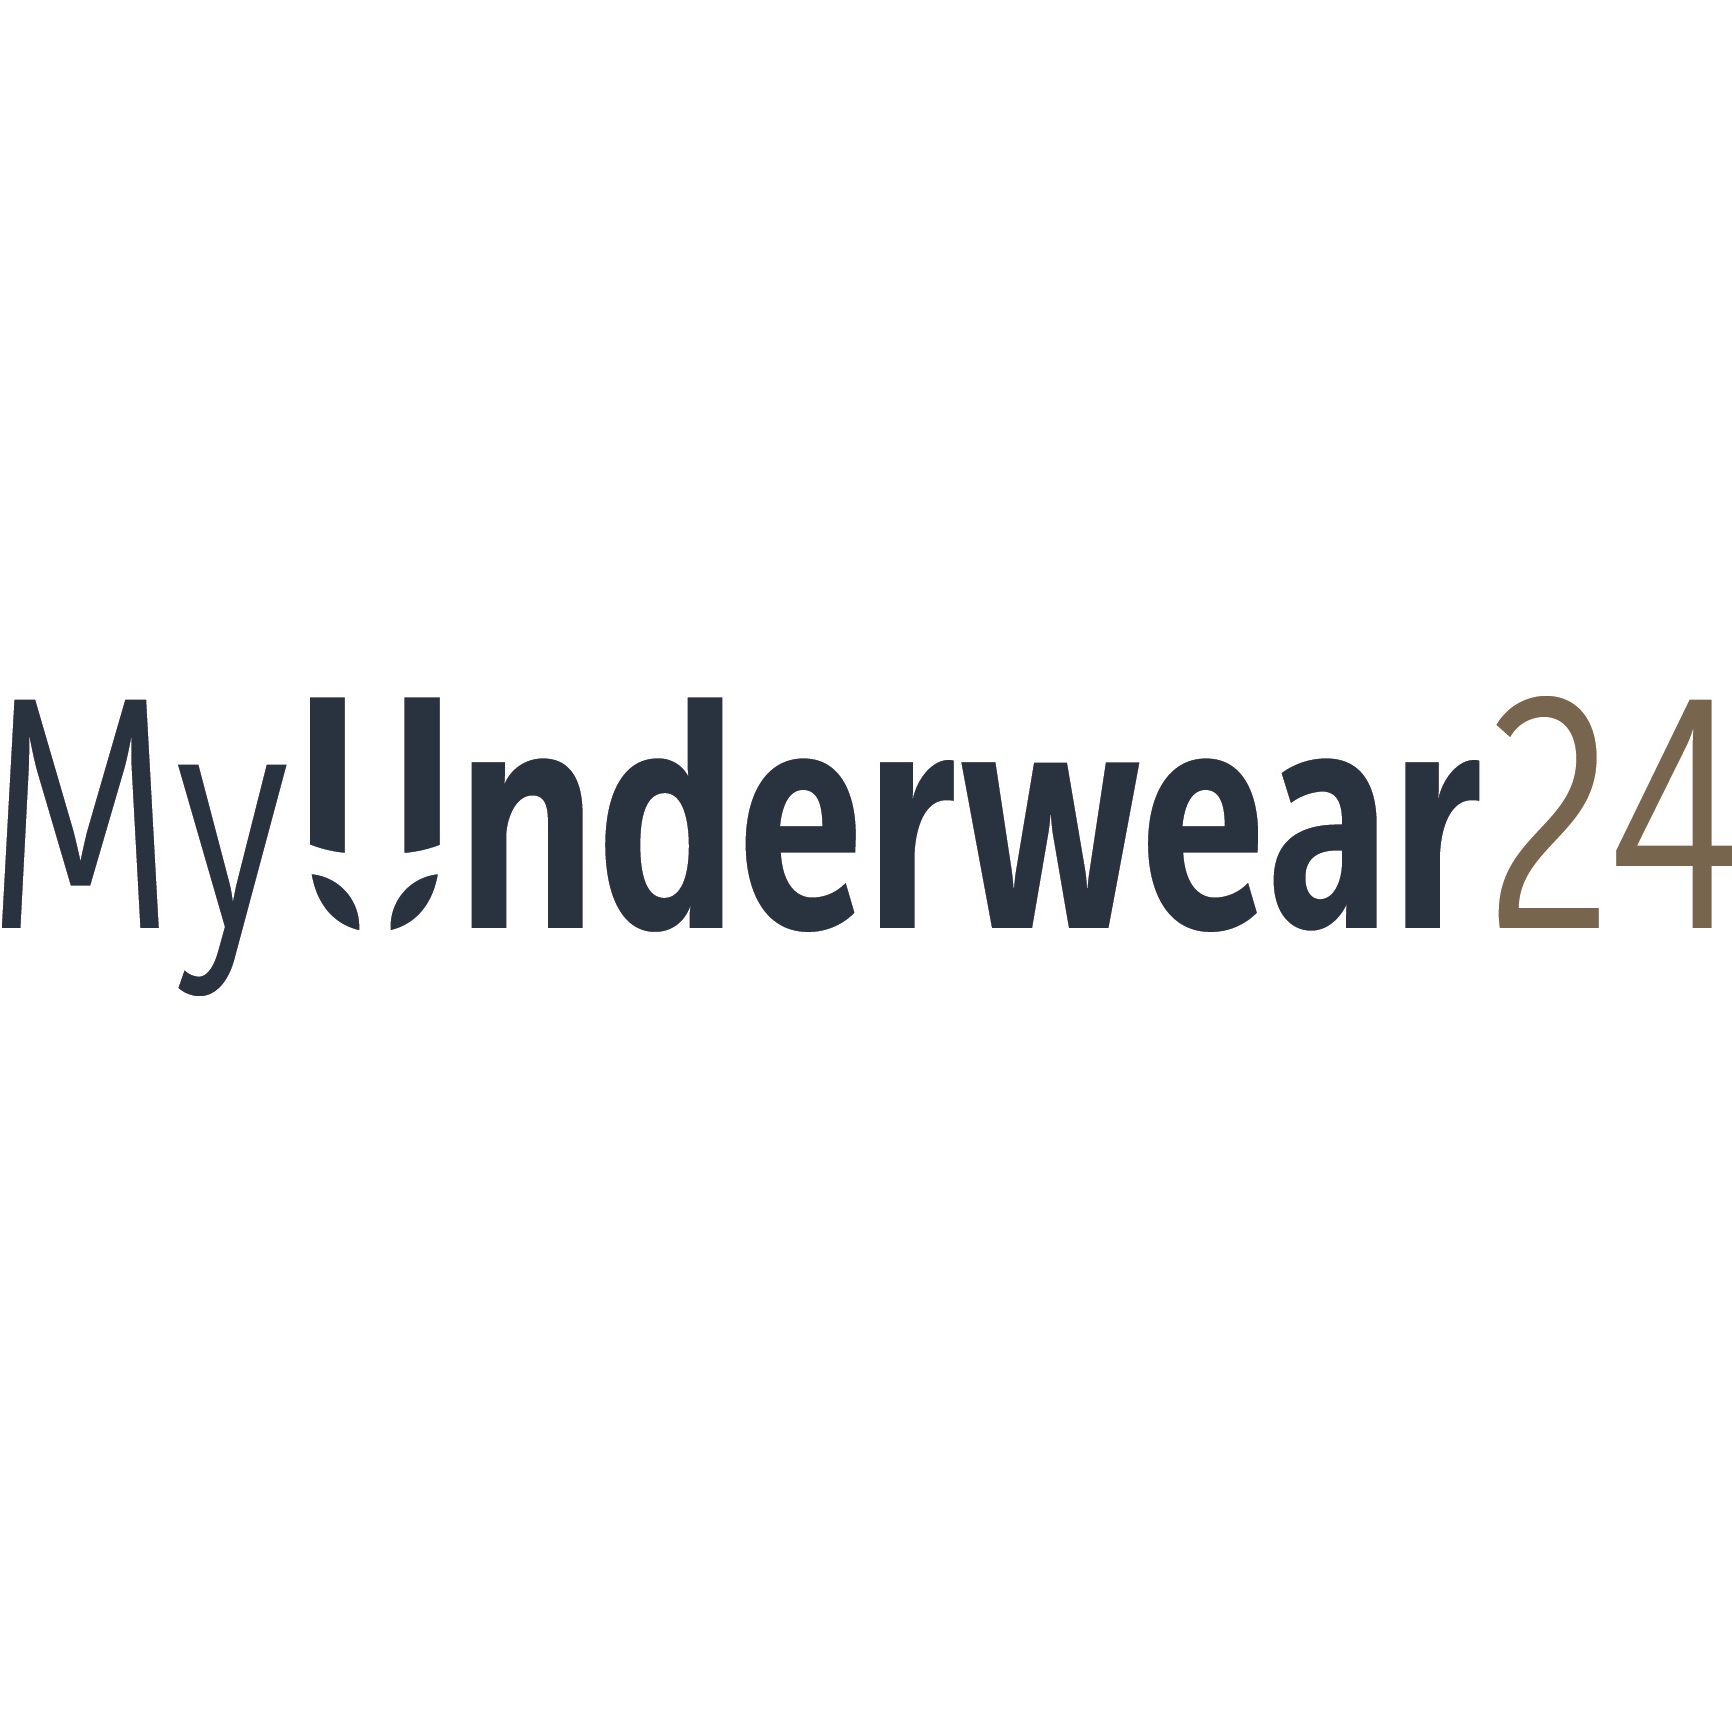 MyUnderwear24 promotie : Dag Van De Webshop